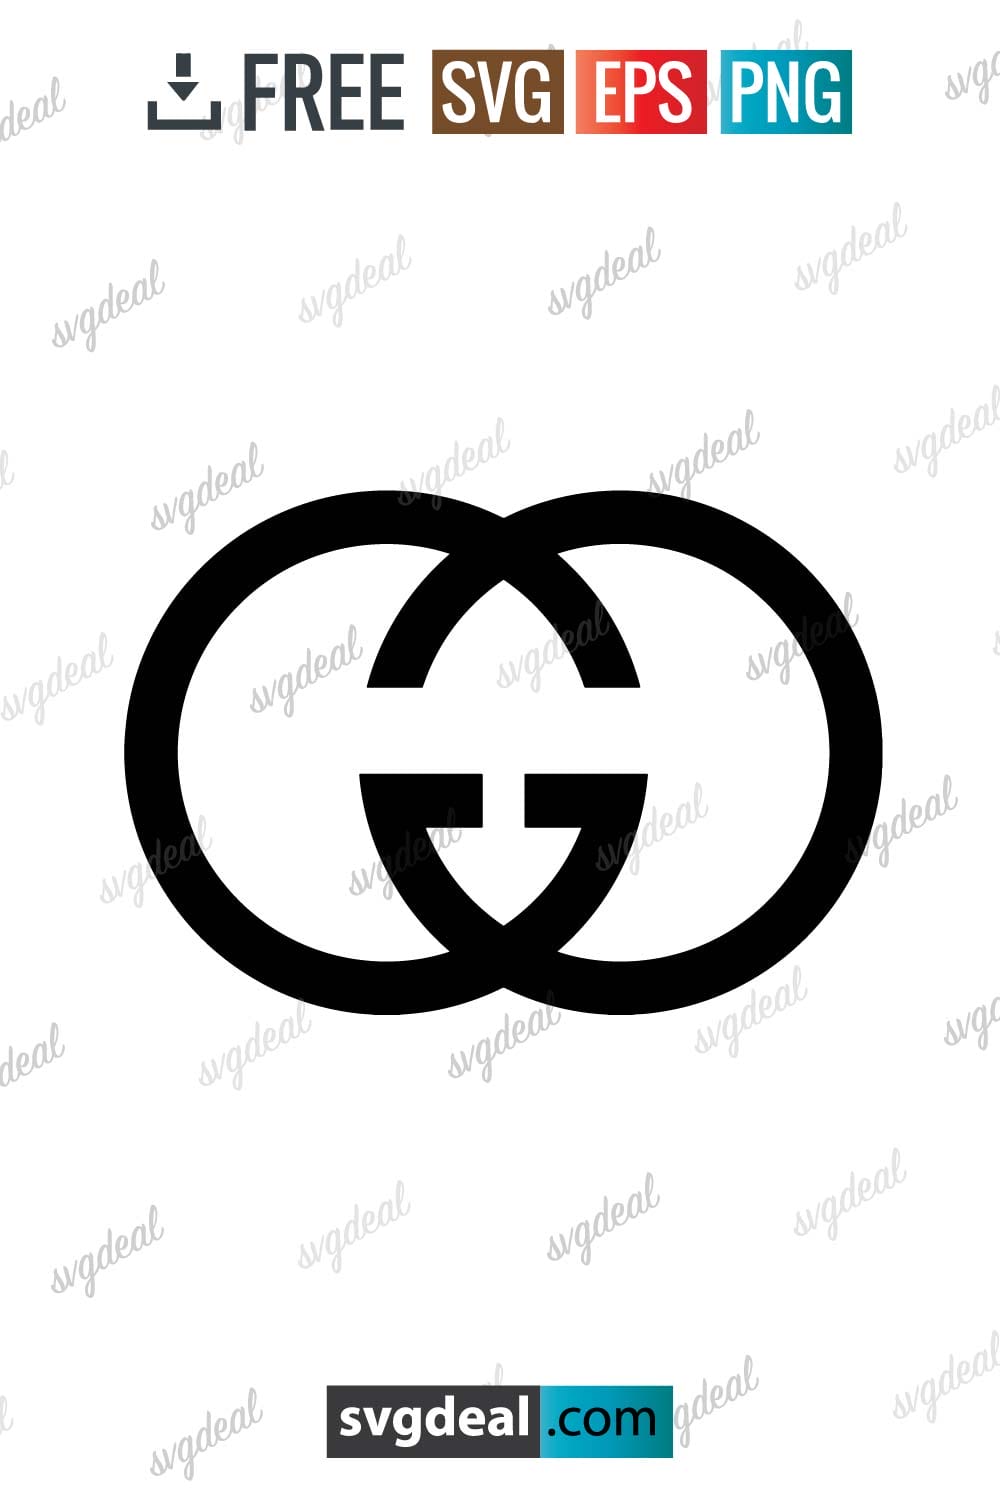 Gucci Logo Stencil SVG Free Cricut Designs